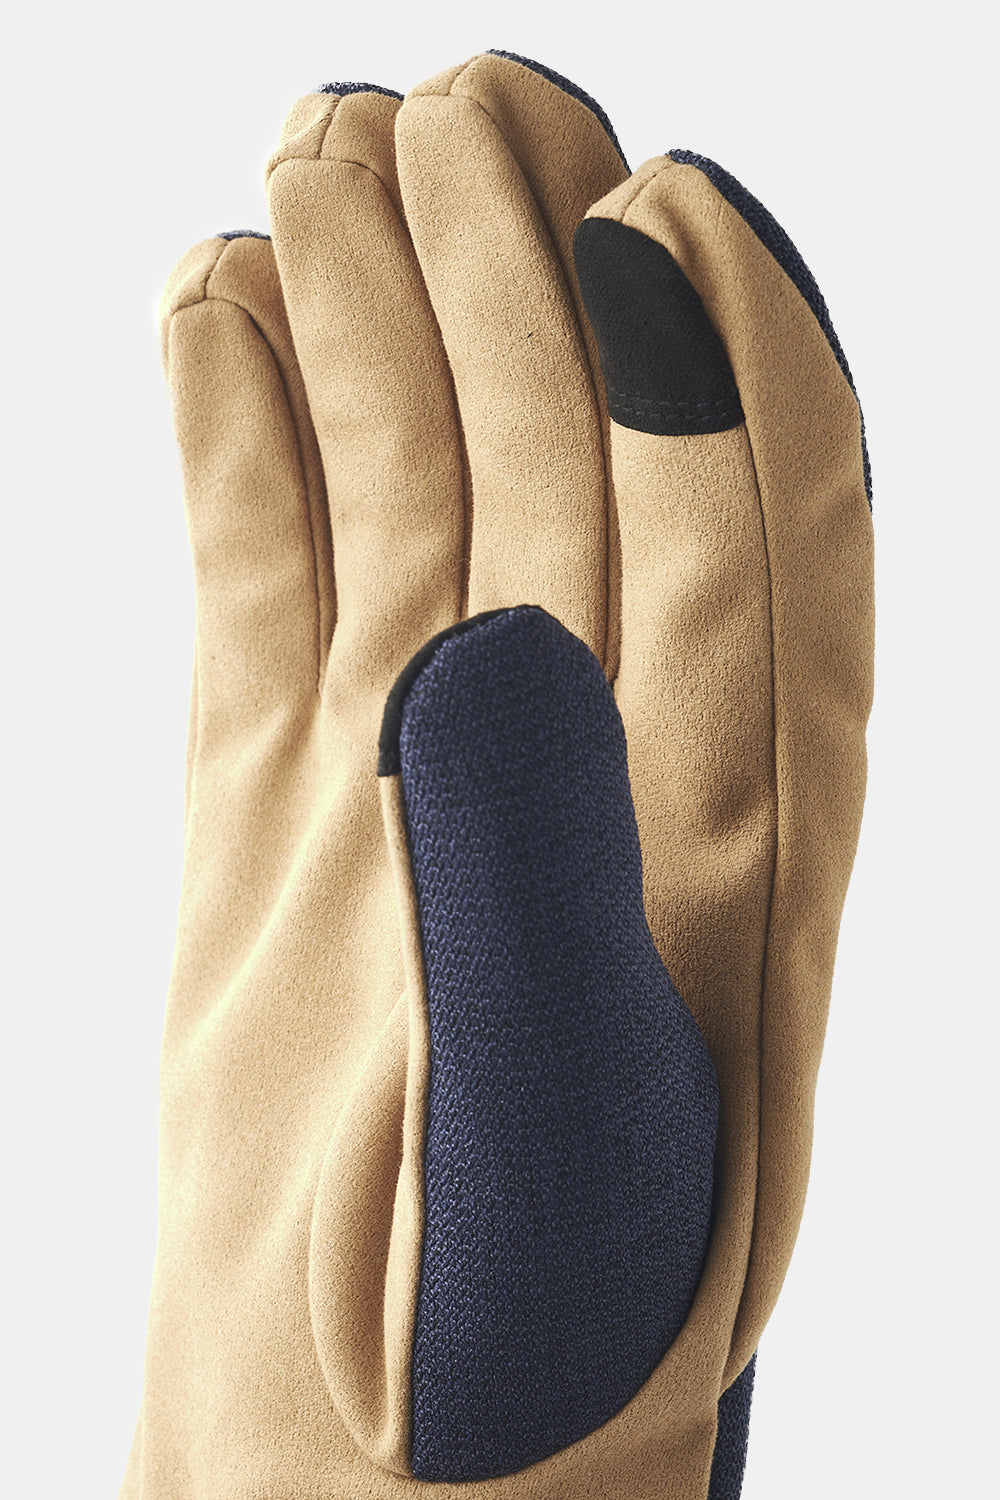 Hestra Zephyr Gloves (Navy/Yellow)